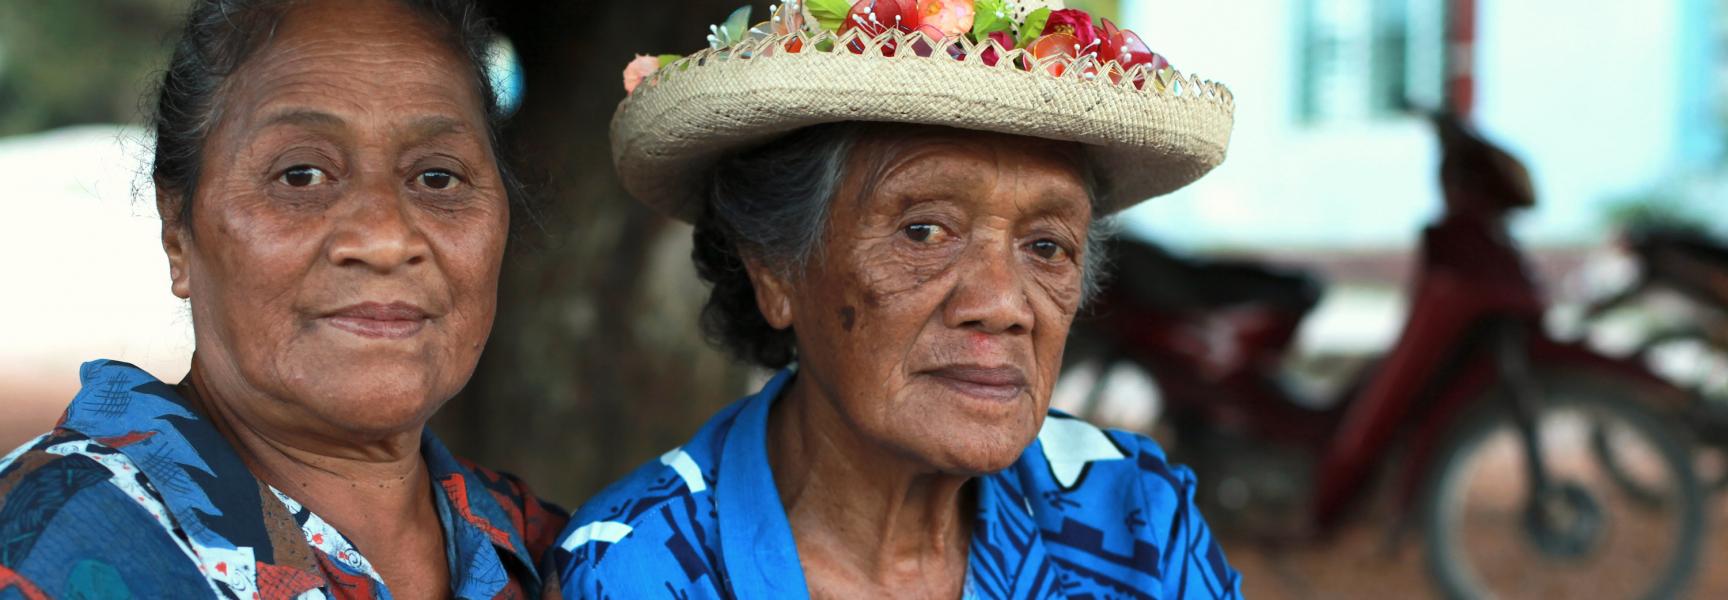 Des femmes aux îles Cook 